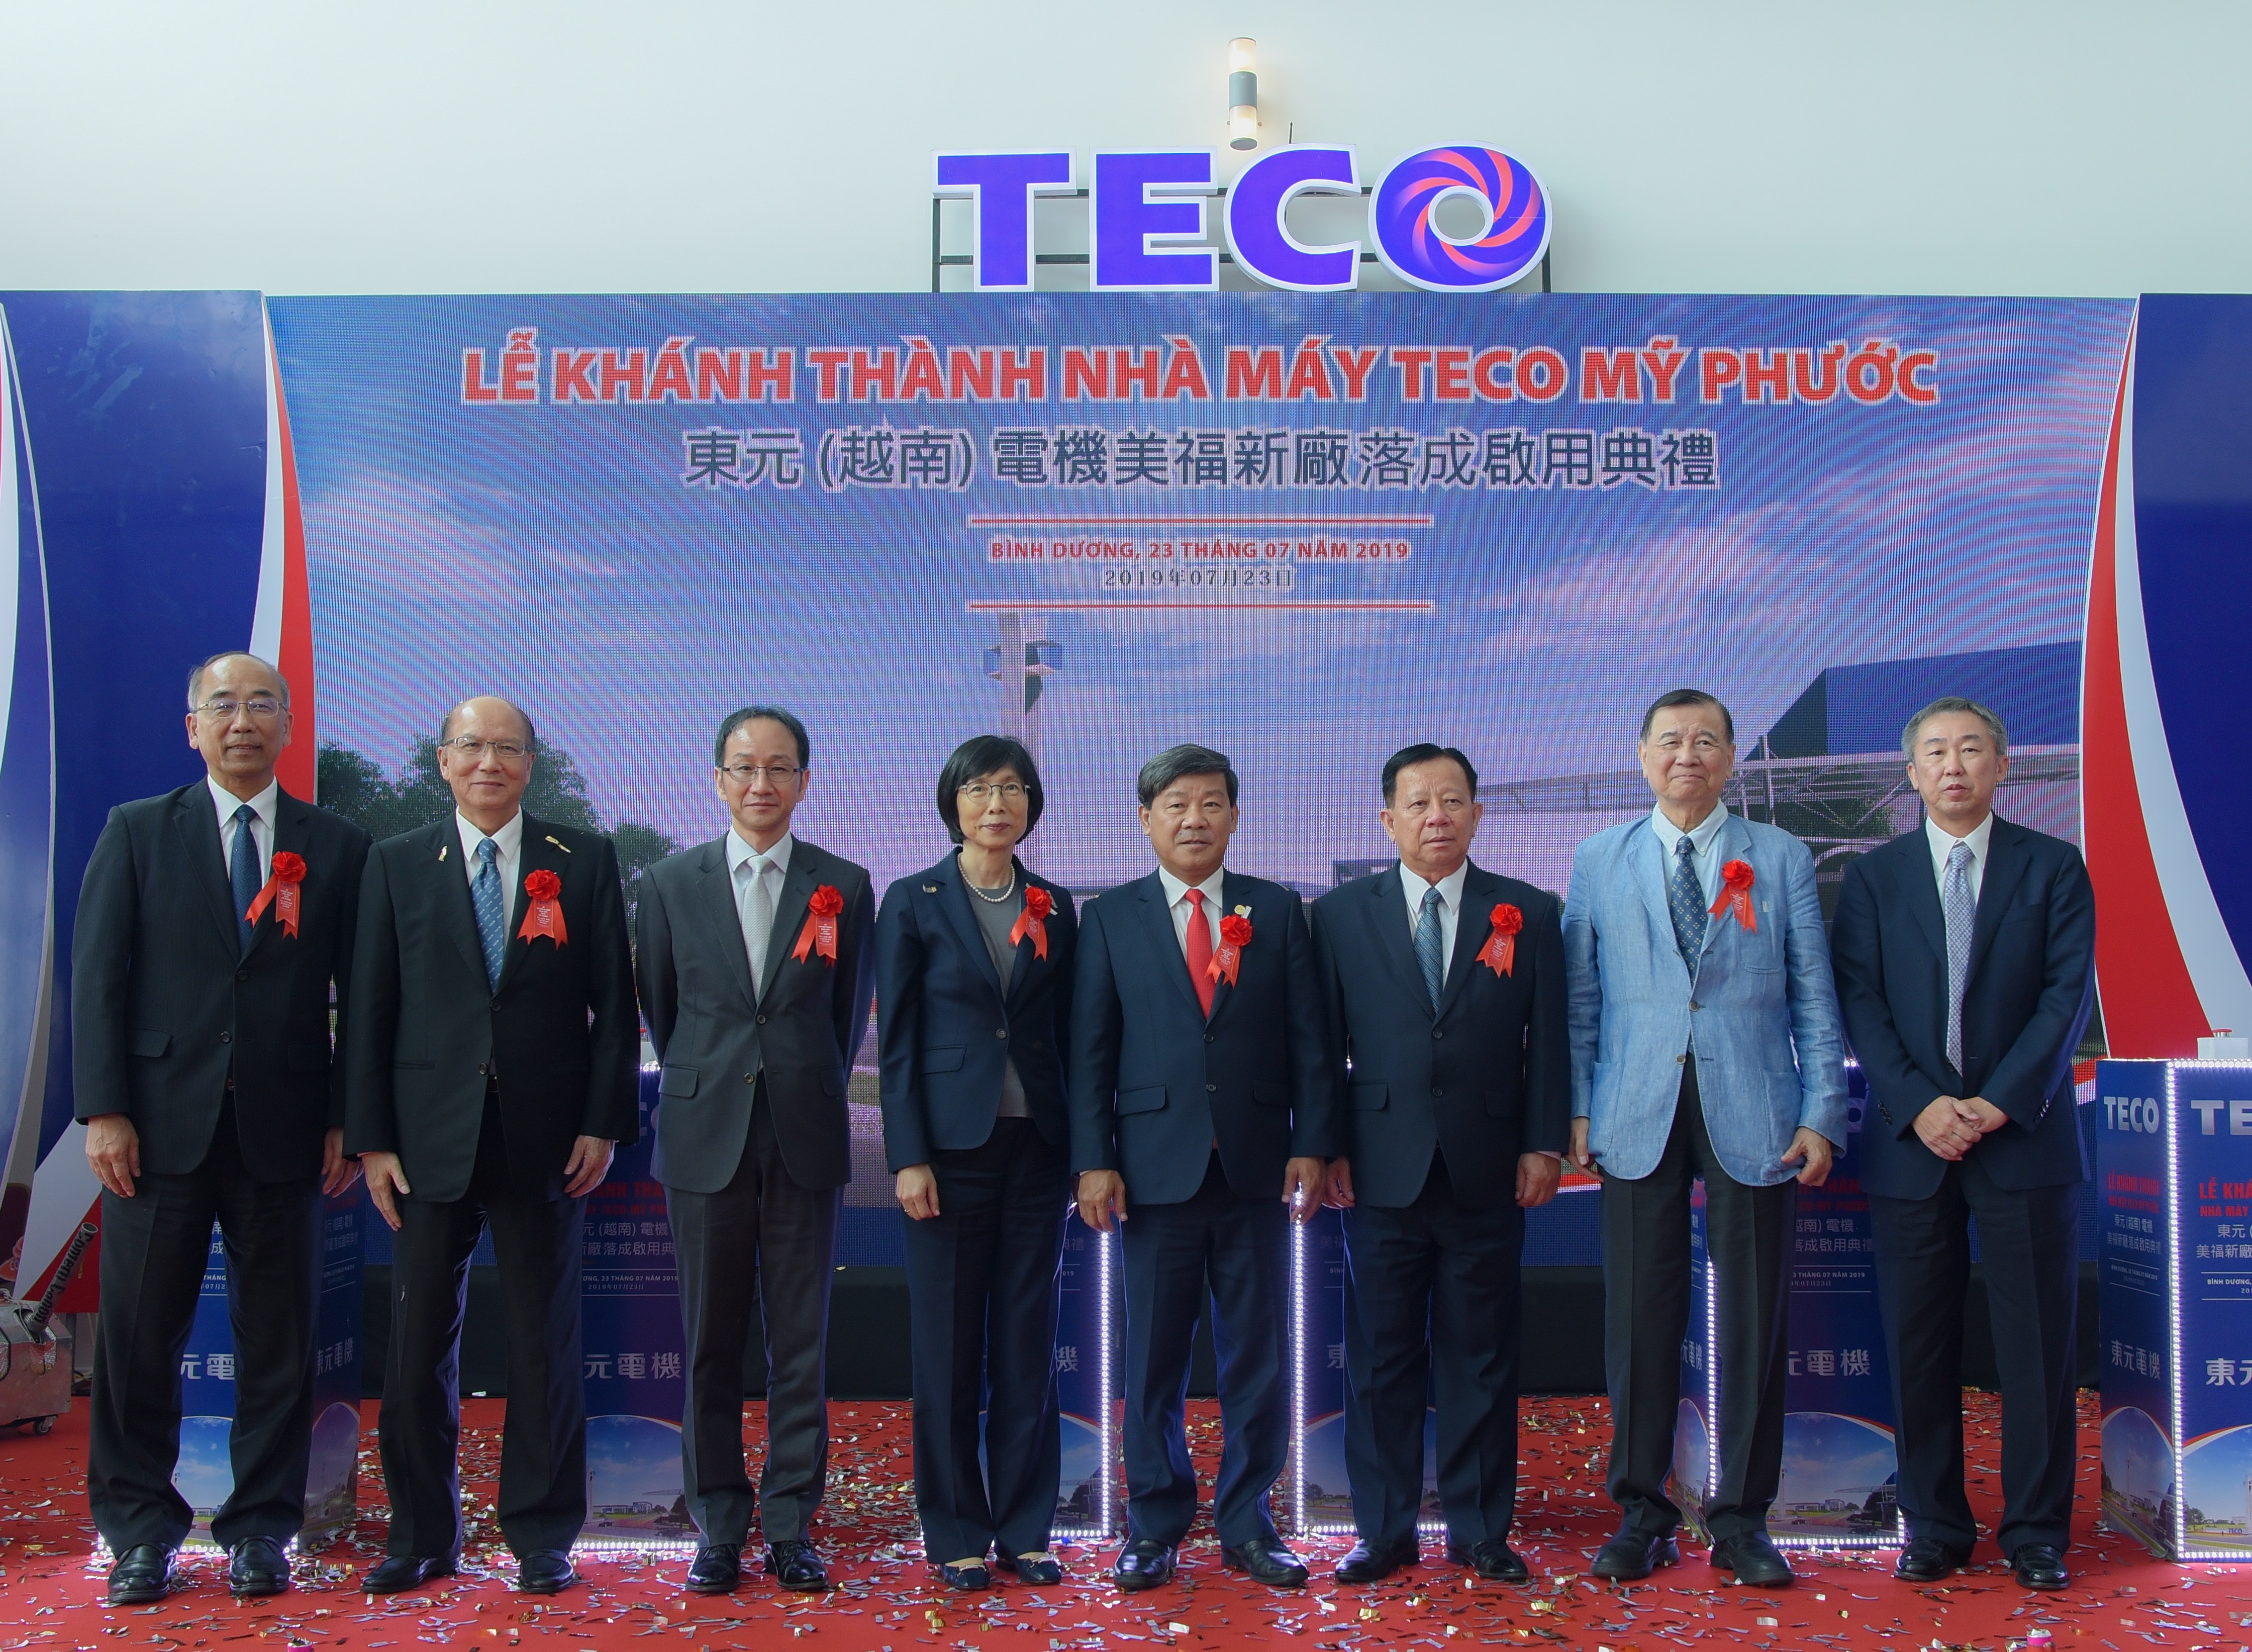 TECO VIỆT NAM khánh thành nhà máy bình dương